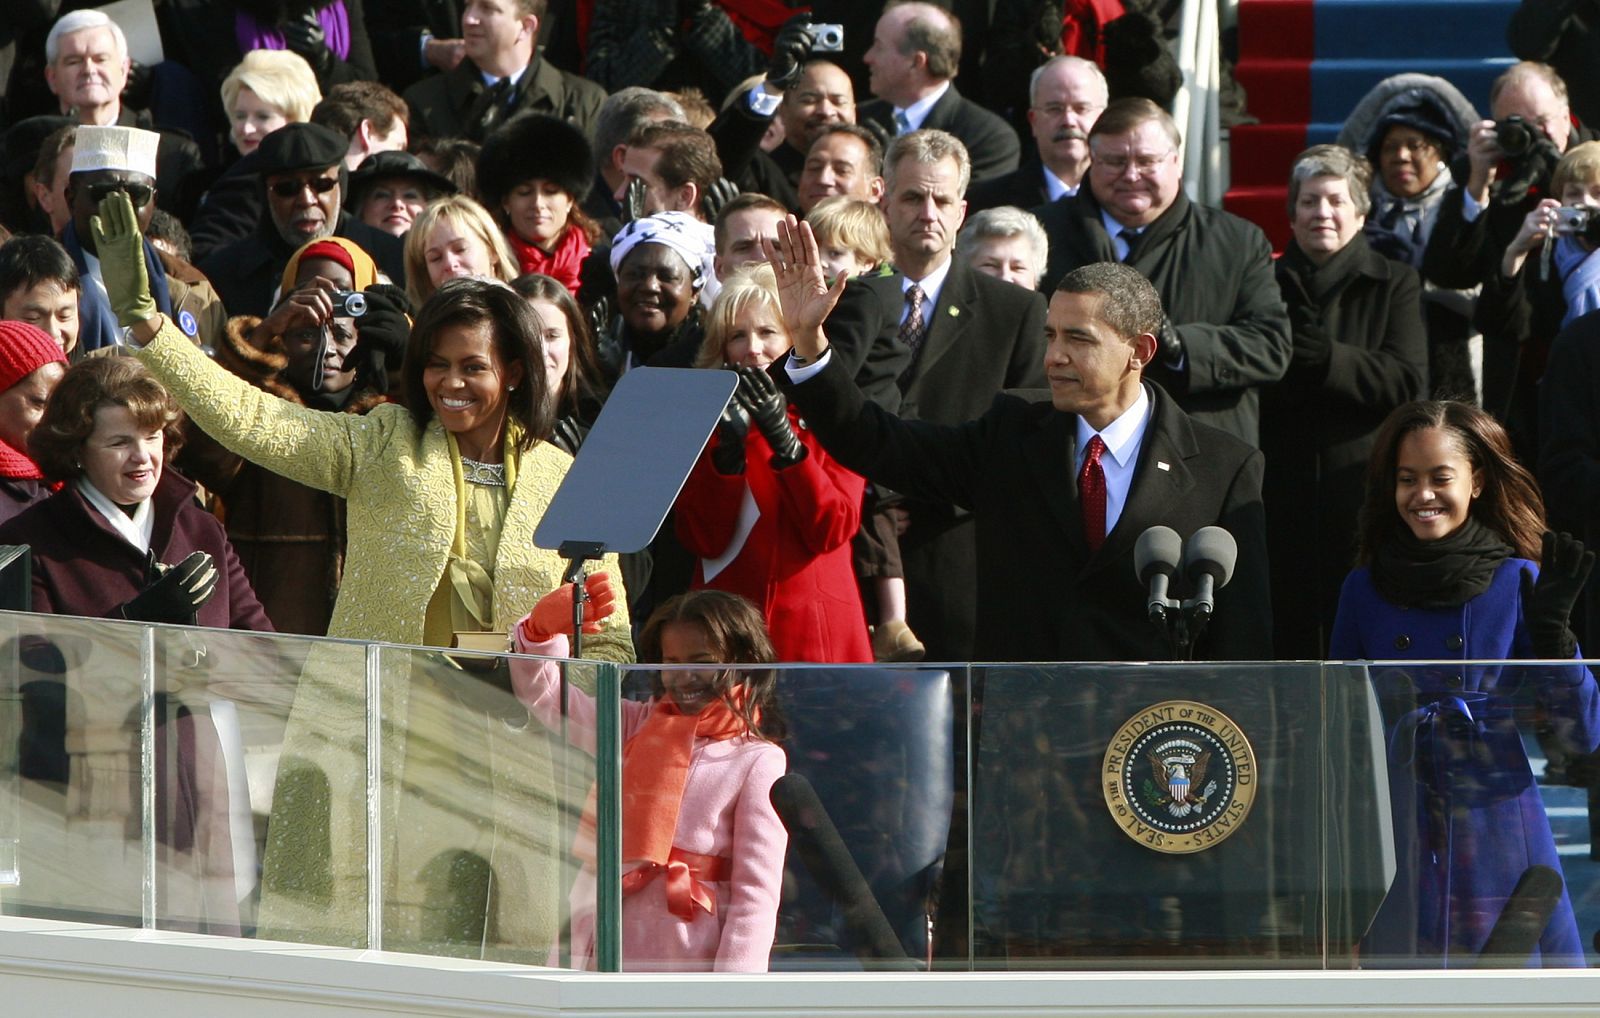 El presidente Obama, la primera dama y sus dos hijas saludan en la ceremonia de investidura en Washington.